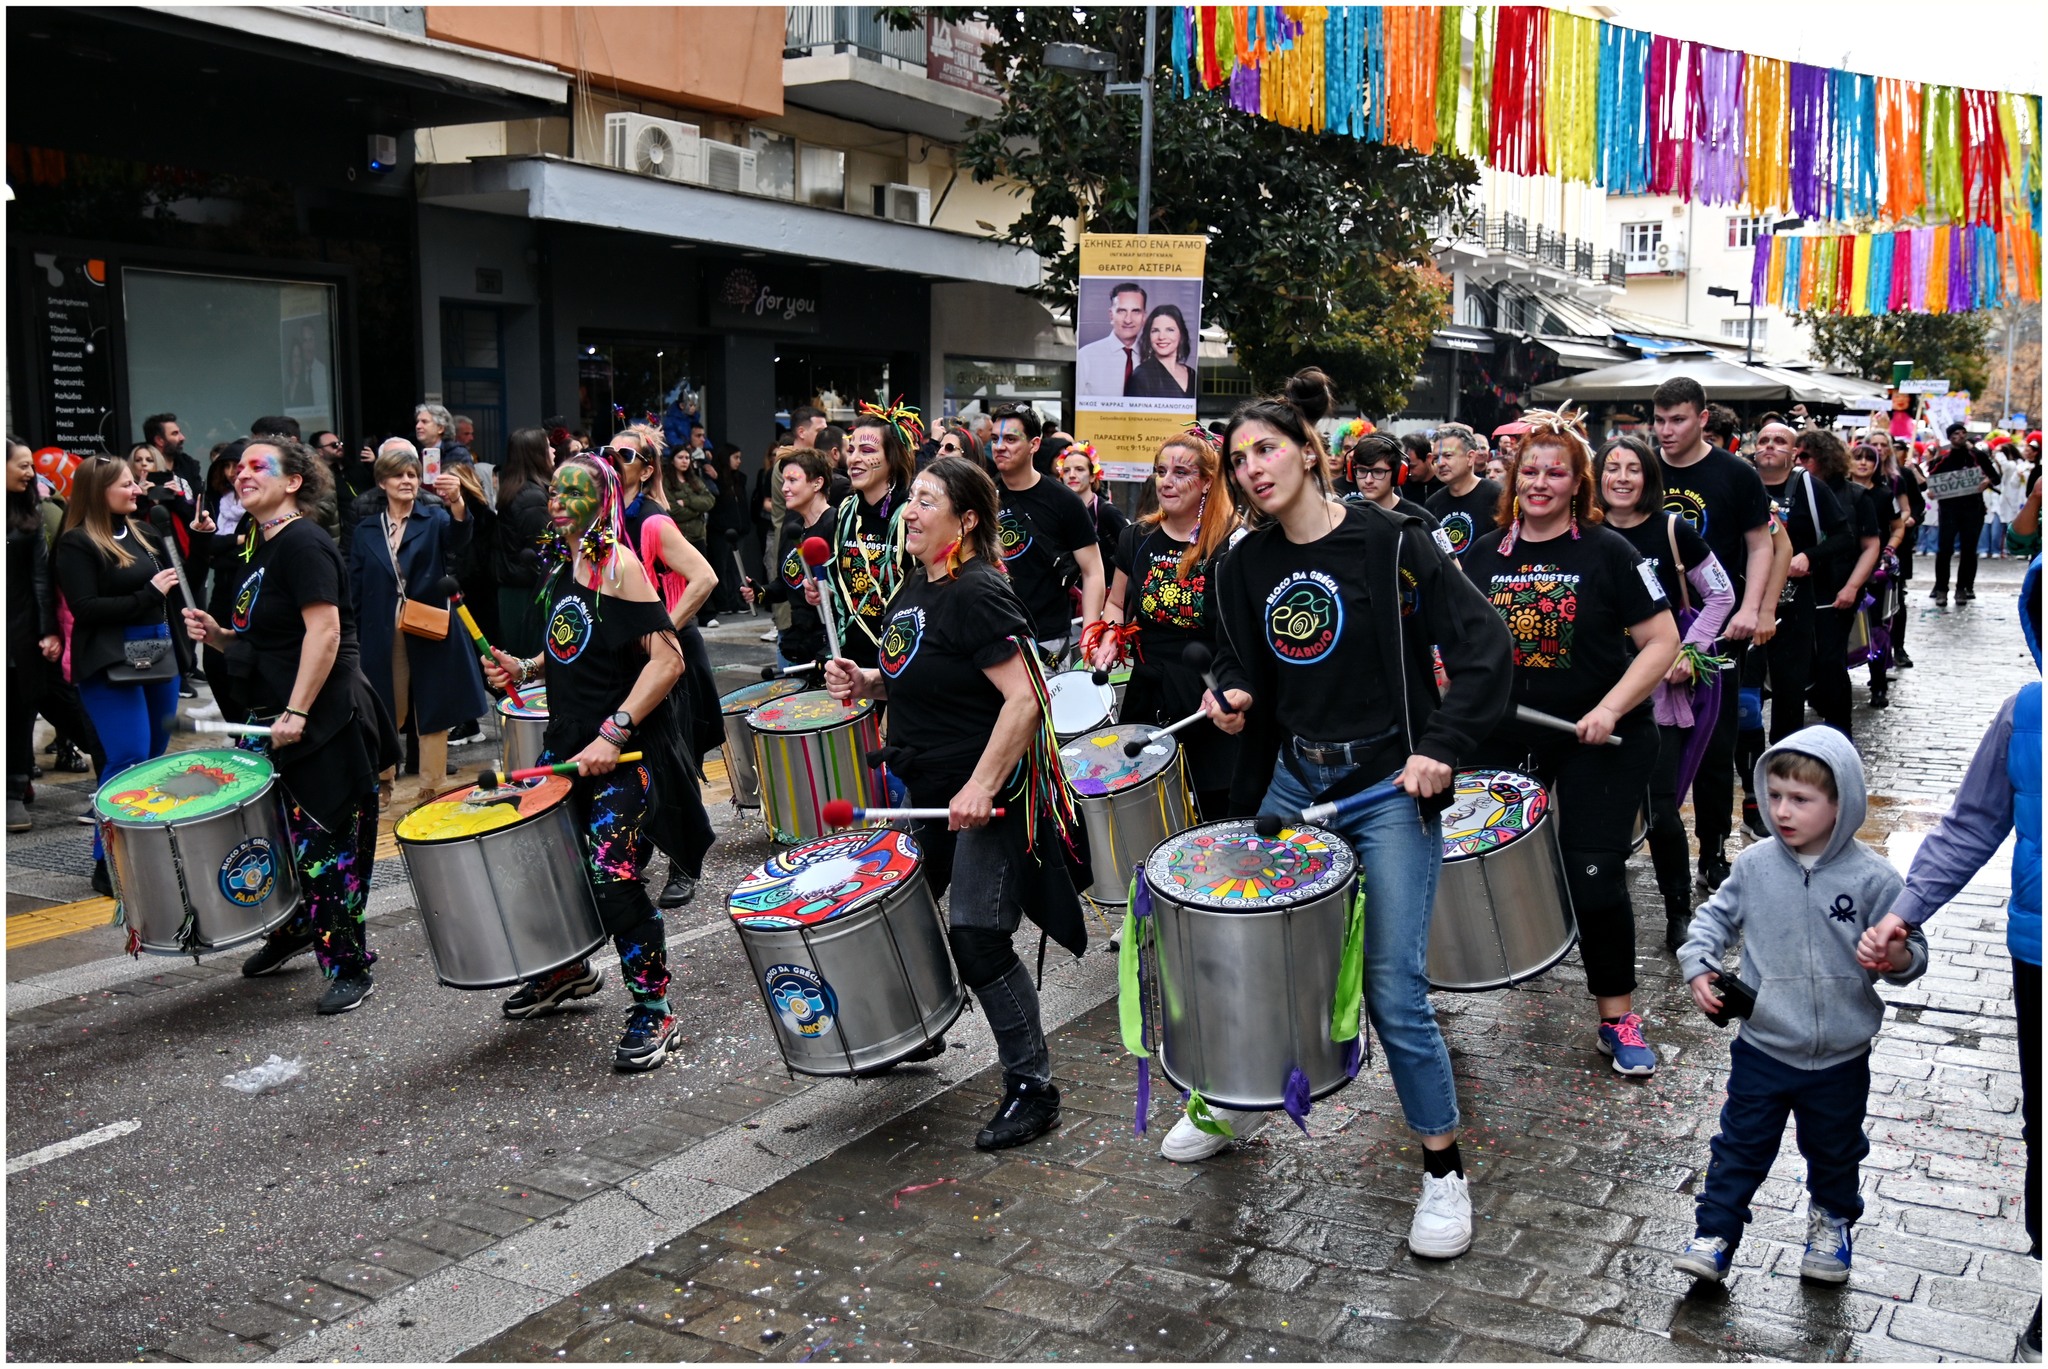 Σέρρες: Με κέφι και φαντασία η καρναβαλική παρέλαση